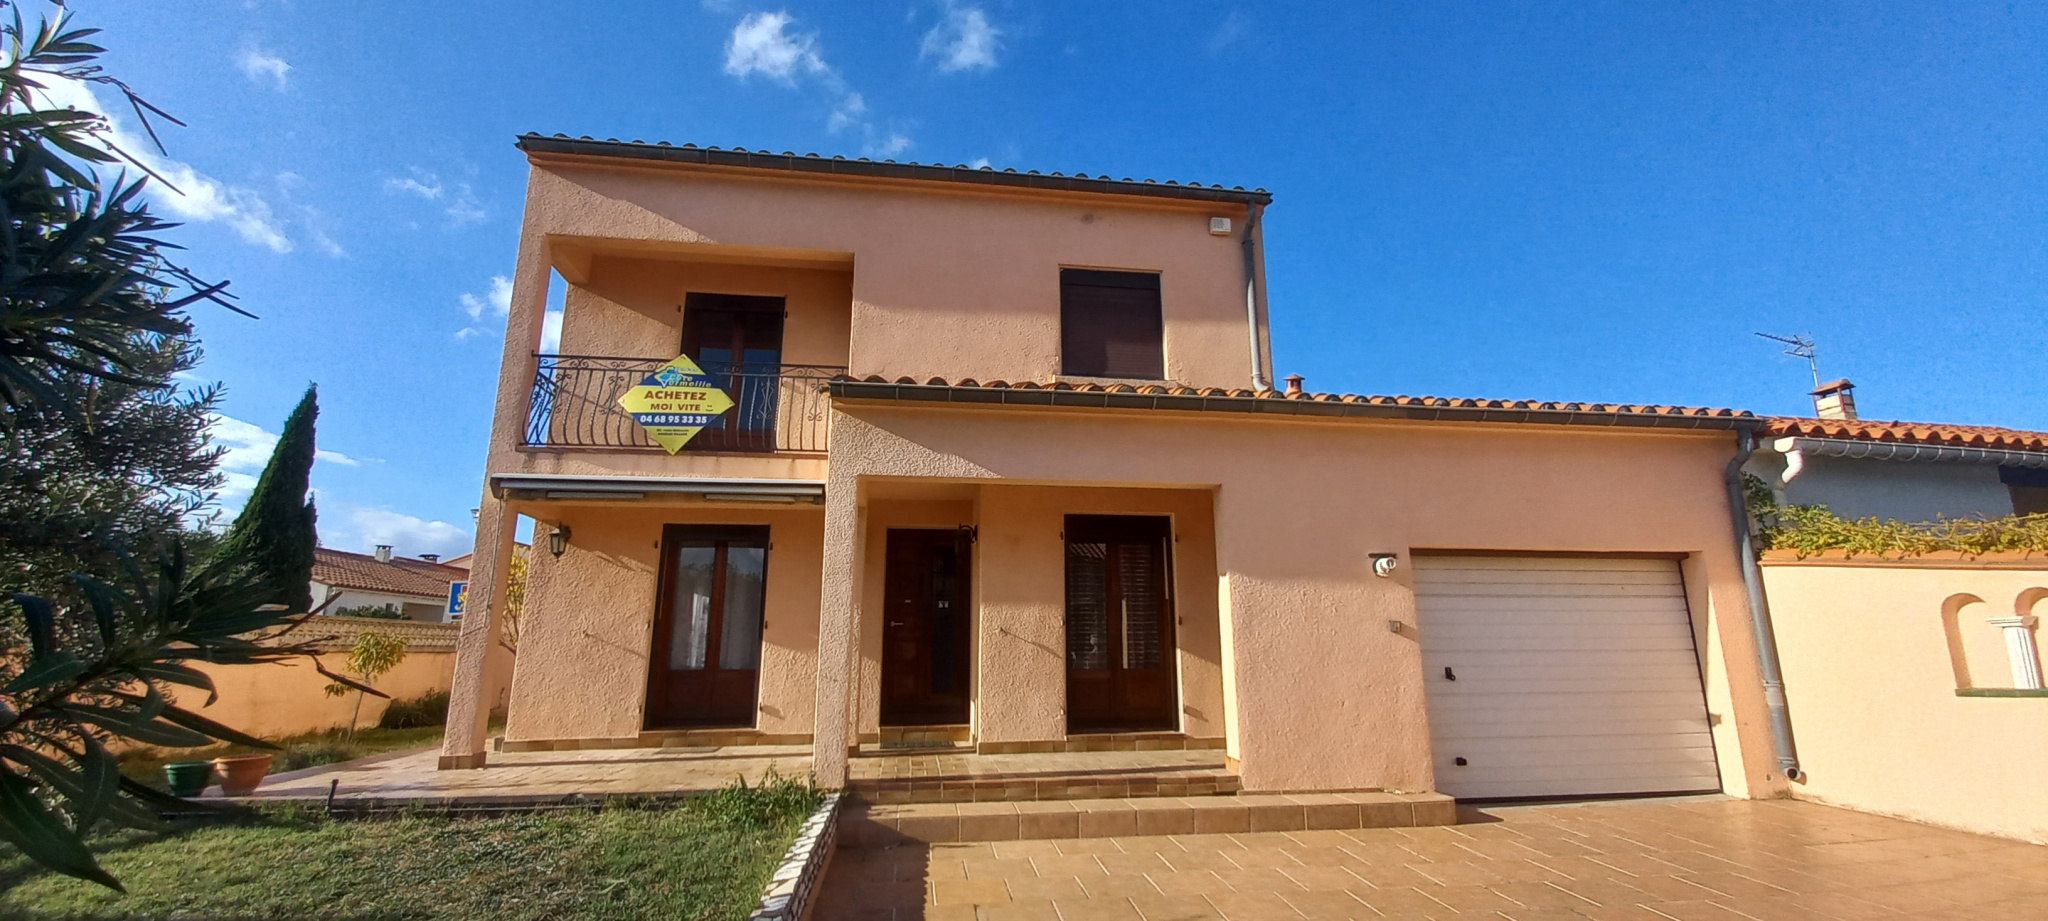 À vendre maison/villa de 121m2 à argelès-sur-mer (66700) - Photo 2'